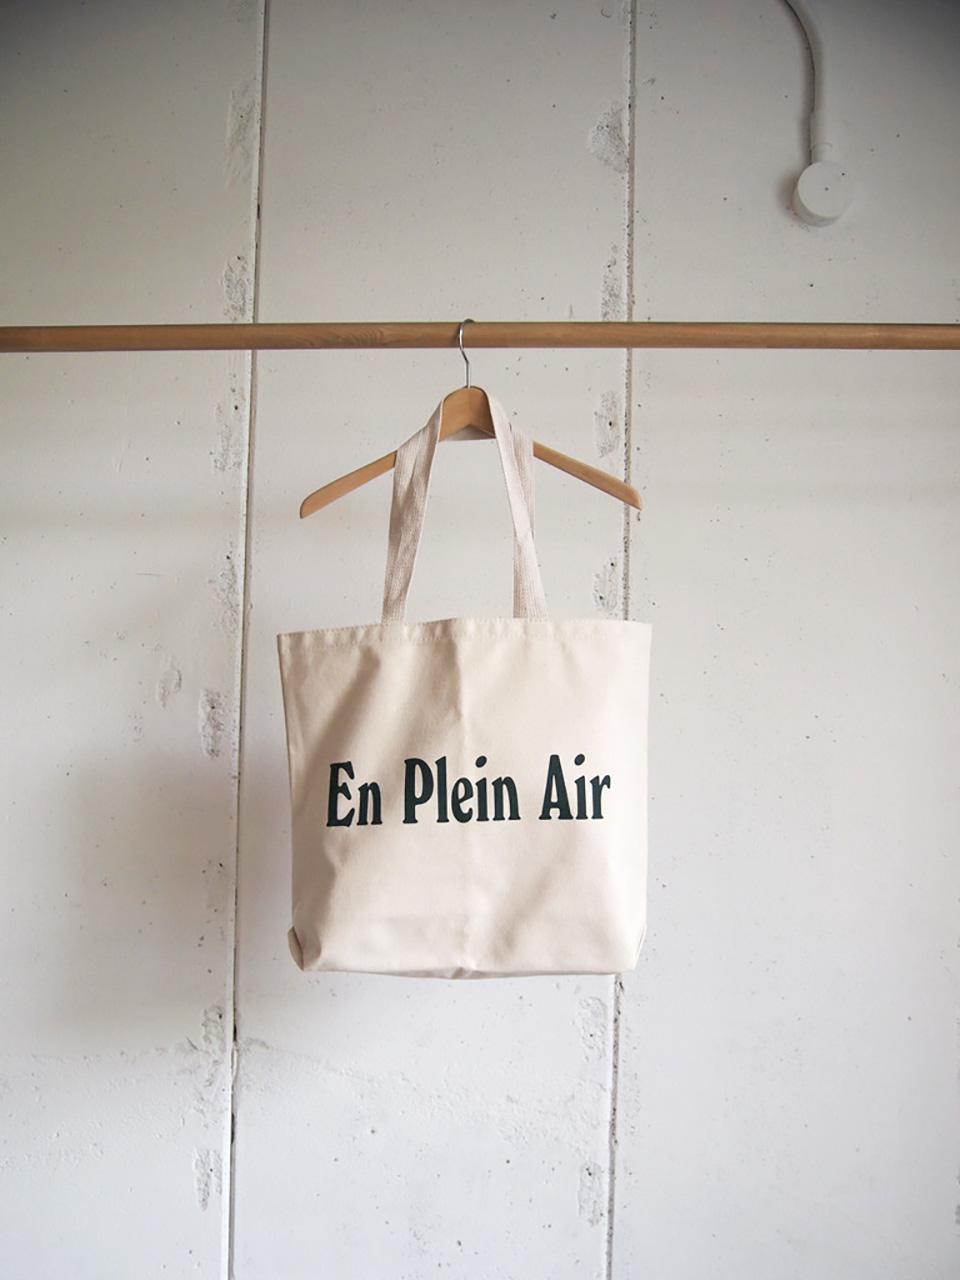 Released today, En Plein Air & wonderland – notwonderstore